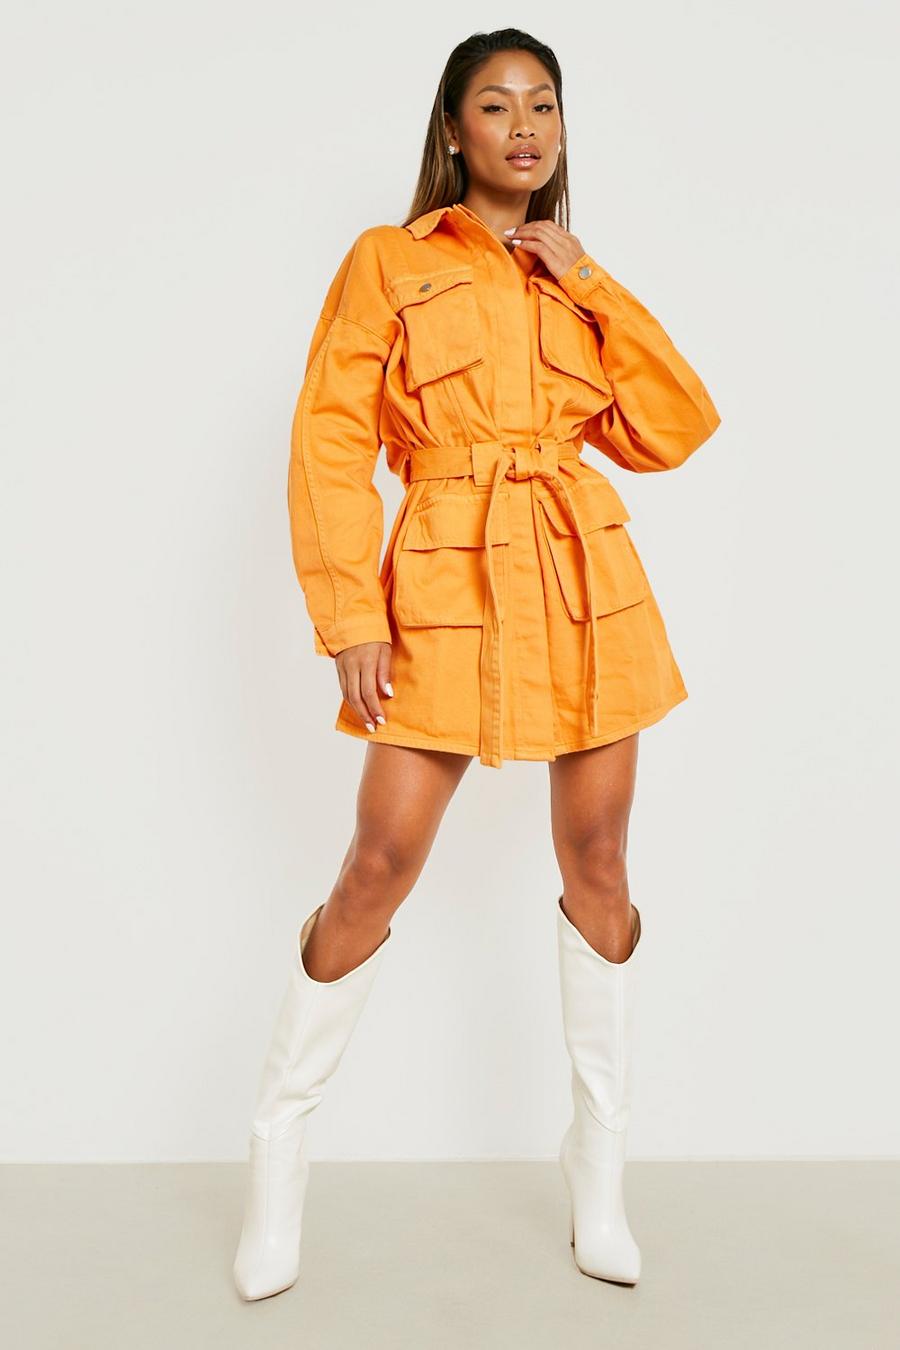 Megan Fox - Robe chemise premium style utilitaire - Disponible jusqu'au 52, Orange